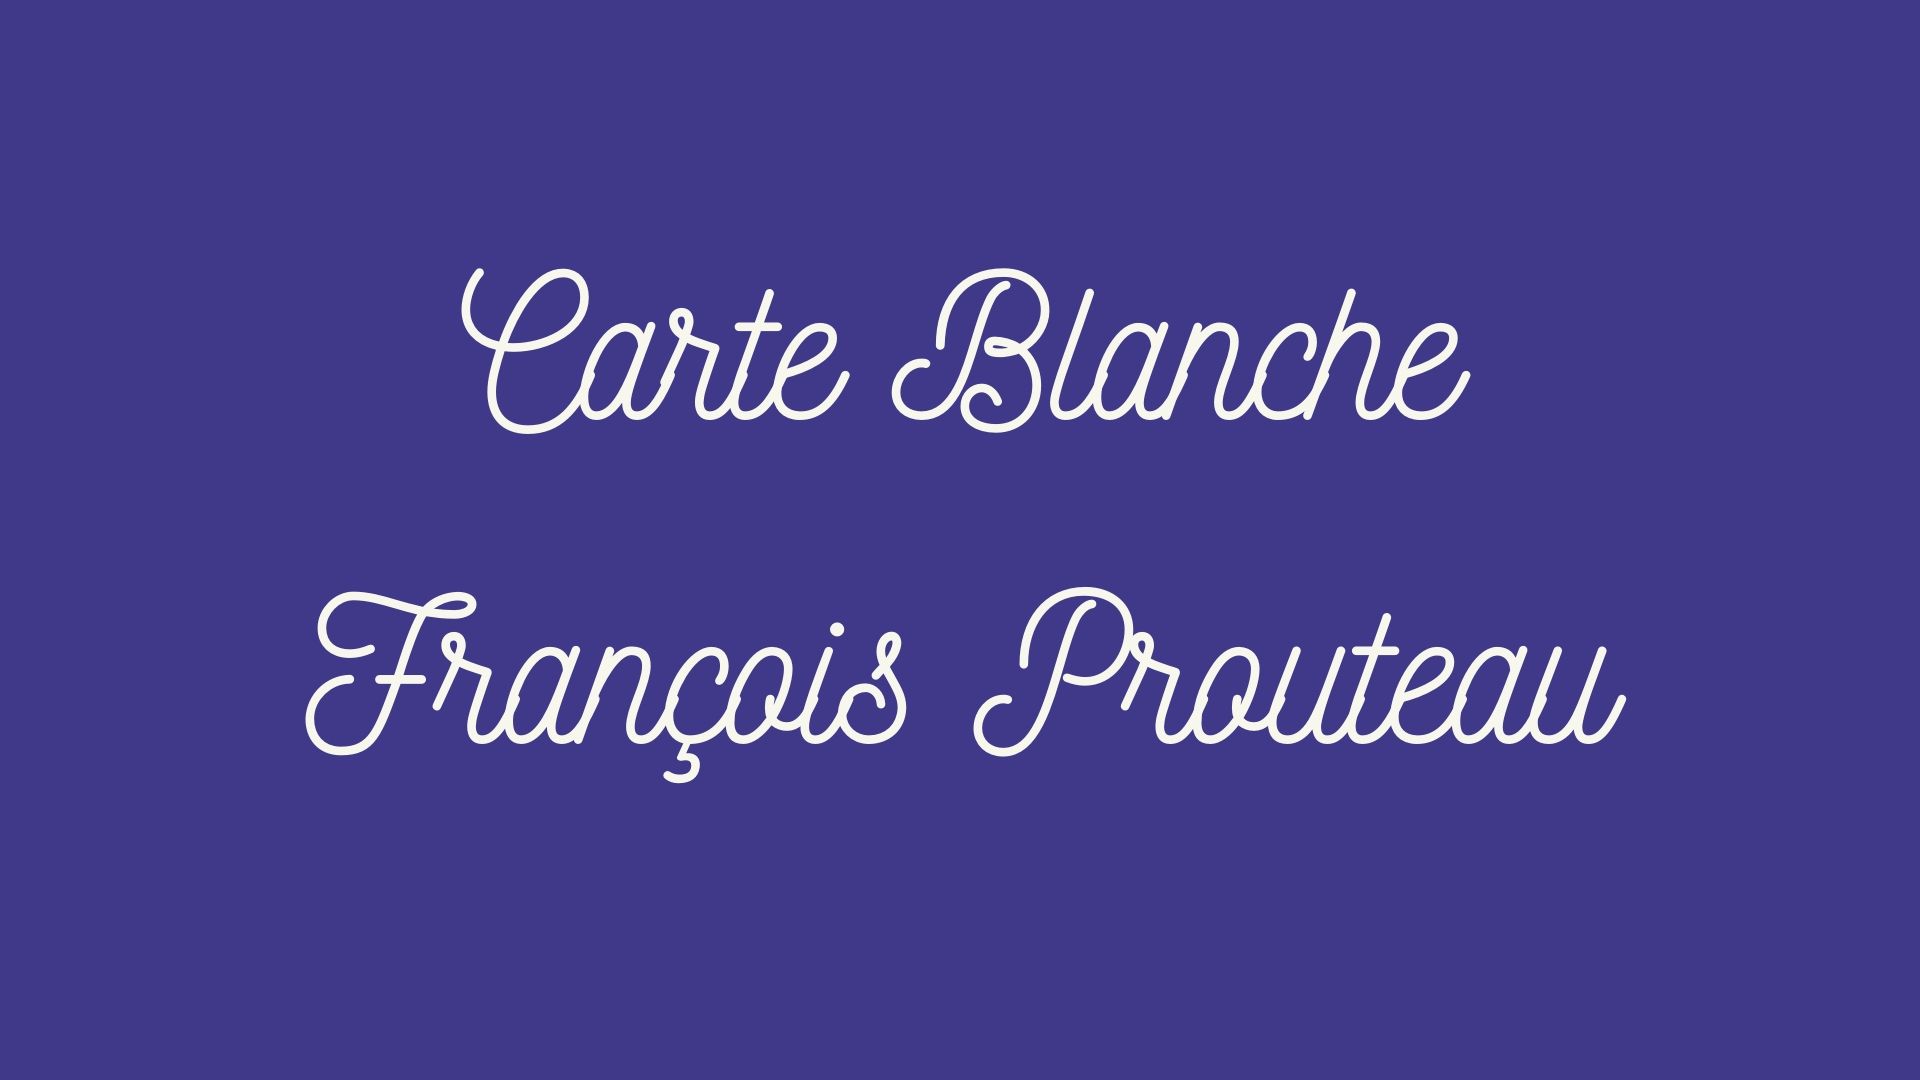 Lee más sobre el artículo La última carta blanca de François Prouteau.